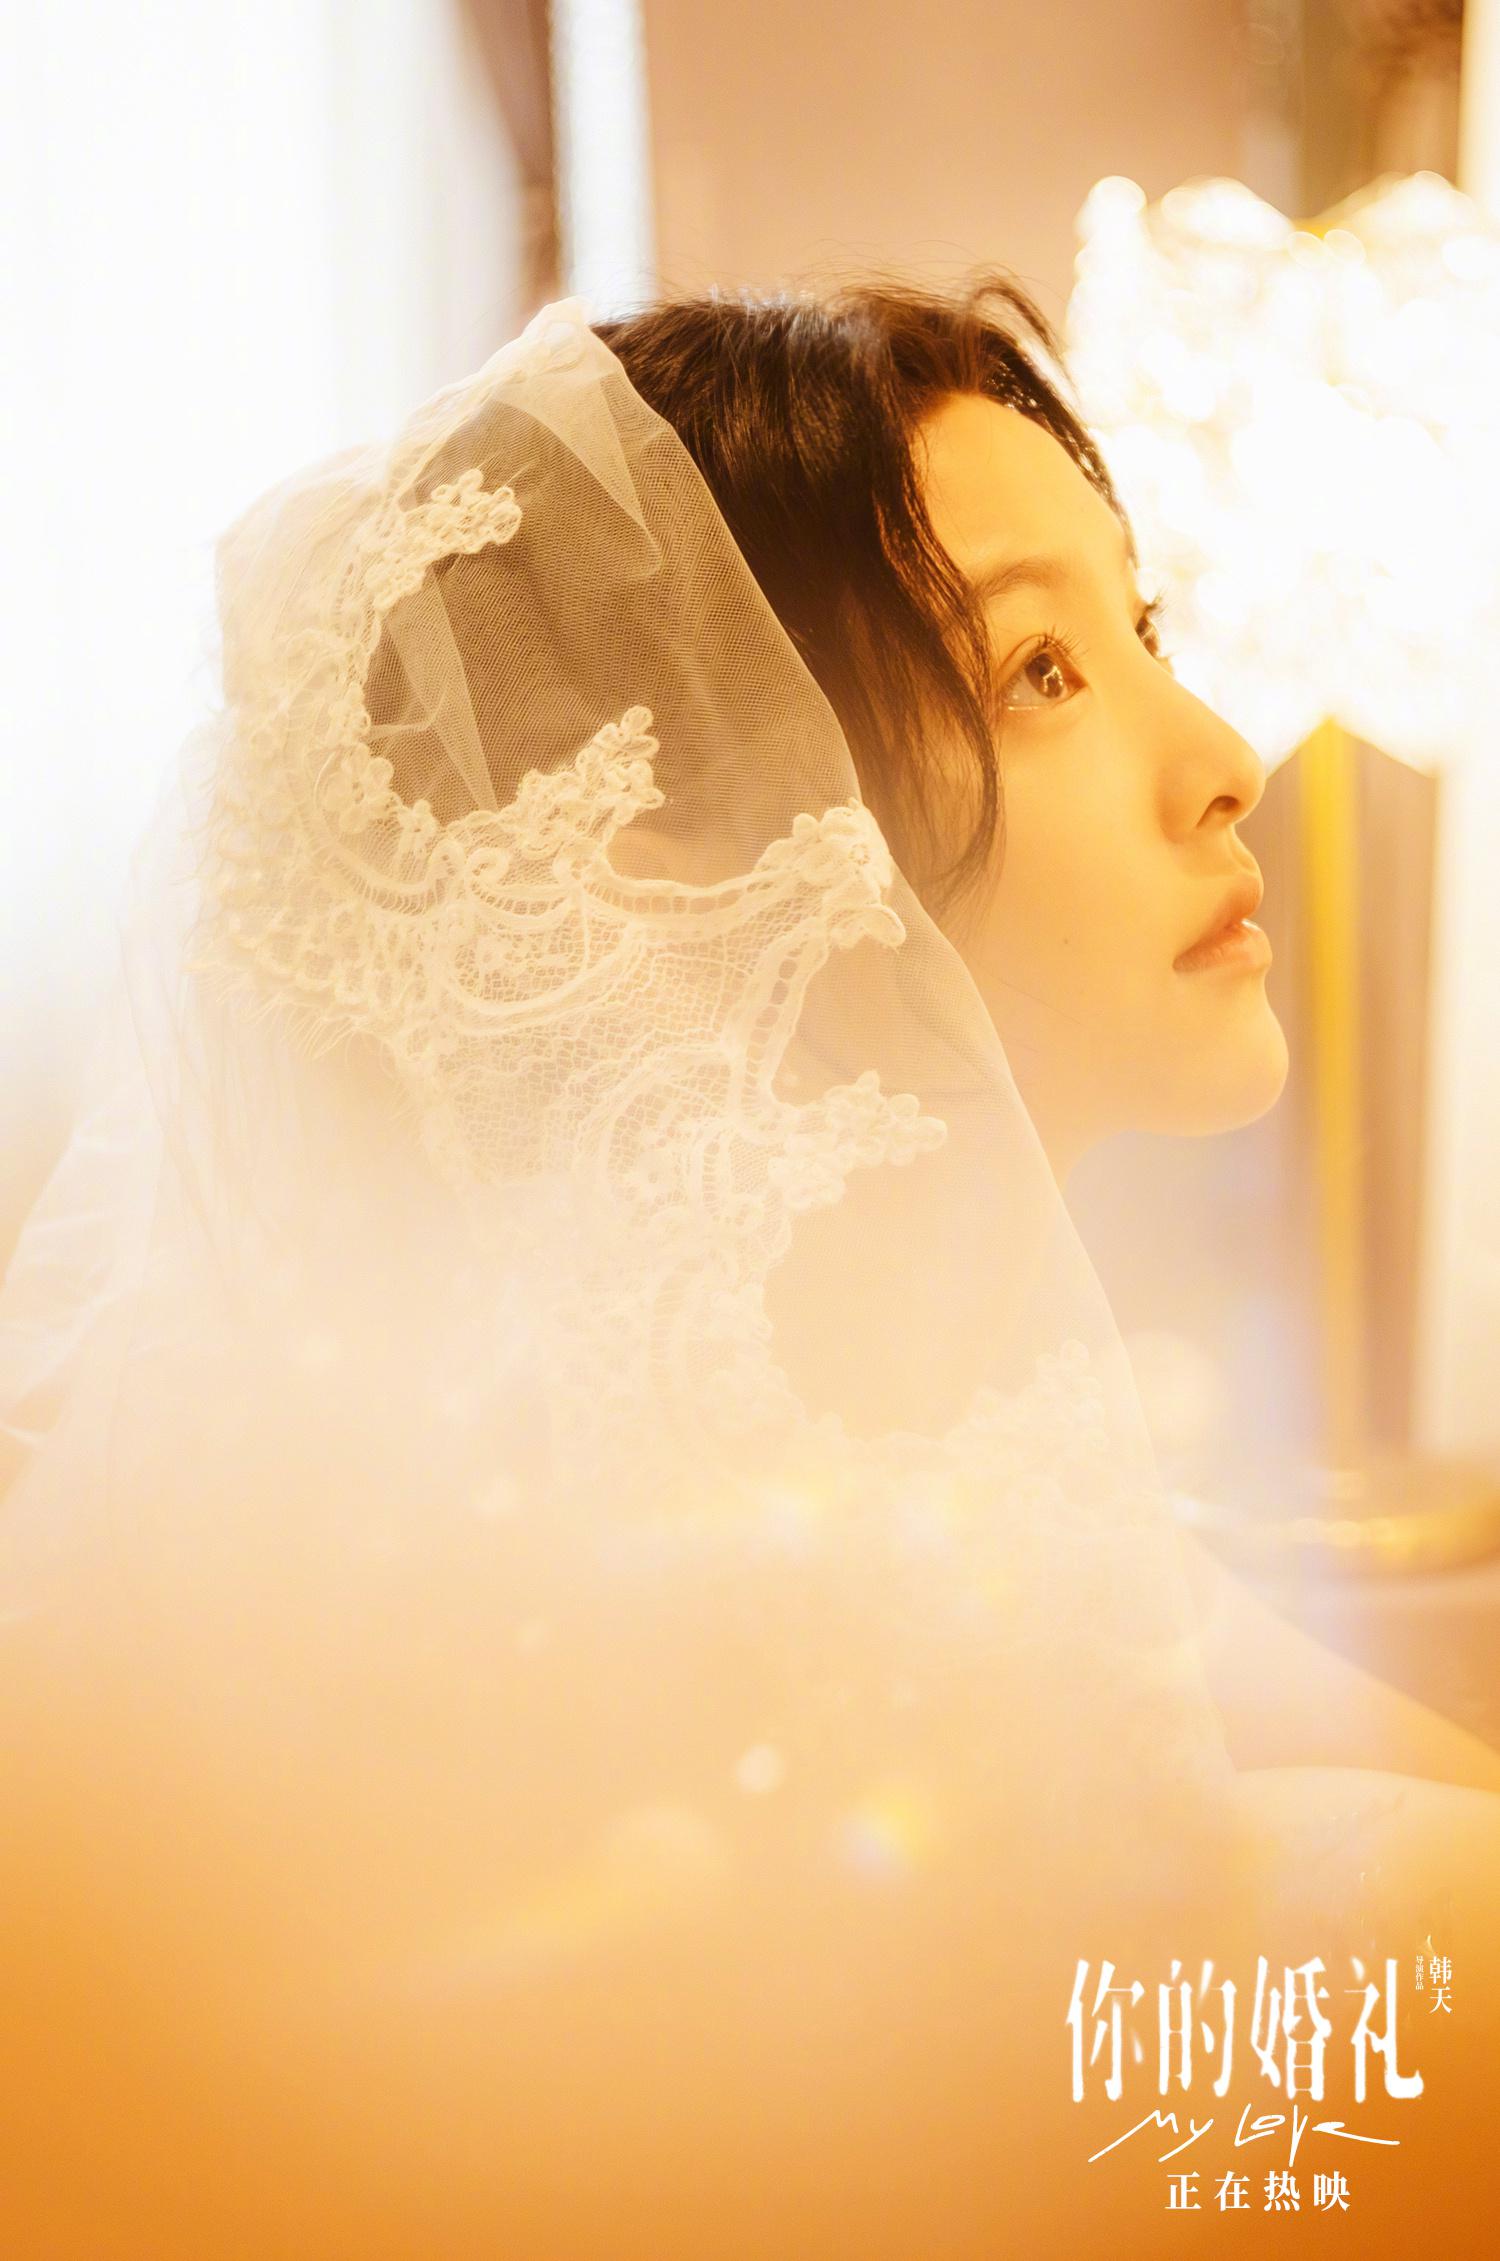 《你的婚礼》高甜预告来袭！许光汉、章若楠展开跨越15年的浪漫爱情故事！【多图】 | Woah.MY